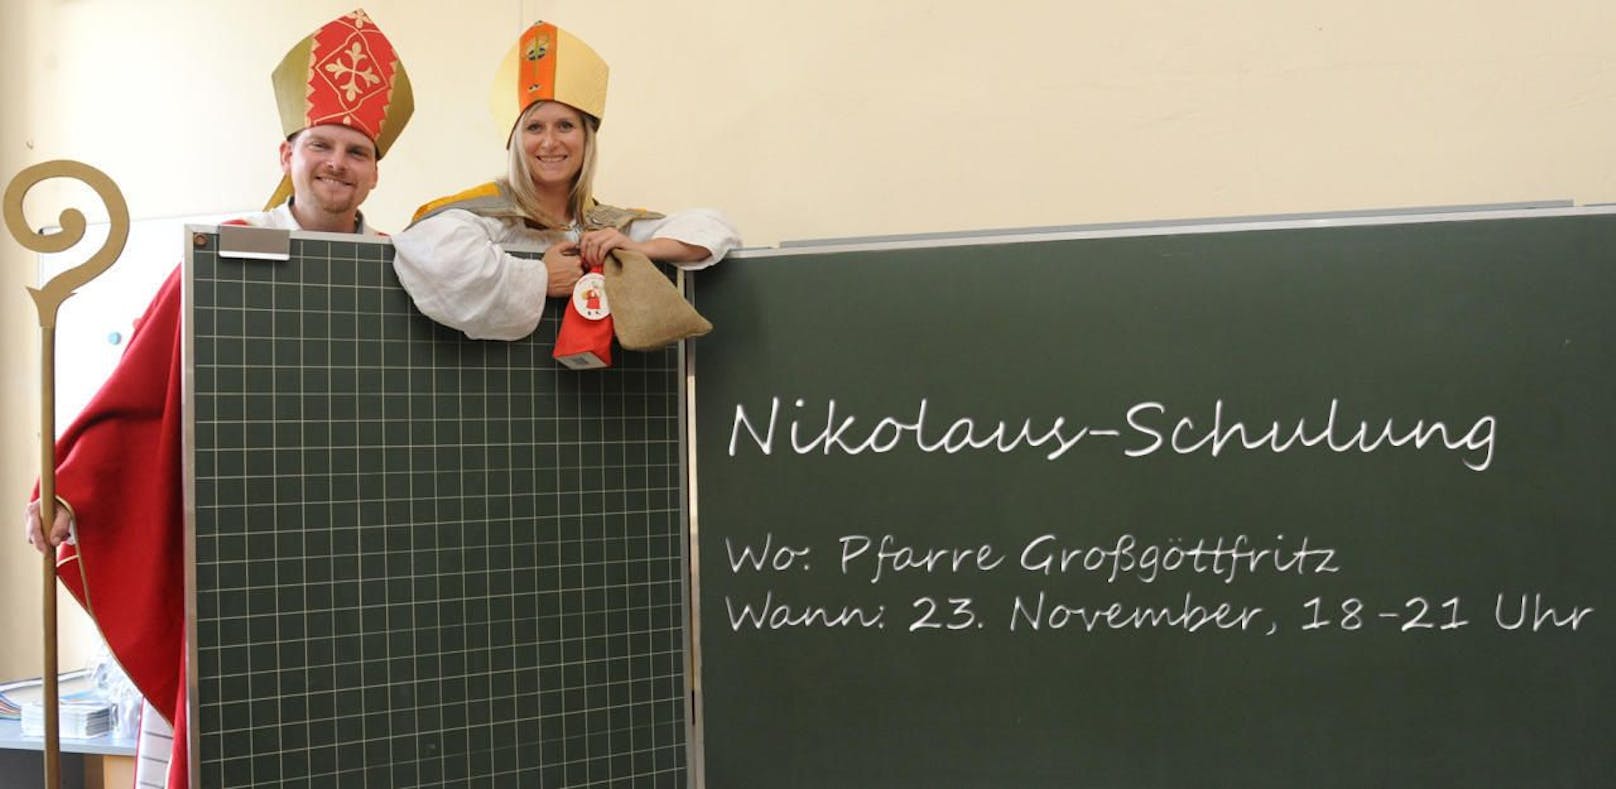 Der Nikolaus drückt jetzt in NÖ die Schulbank